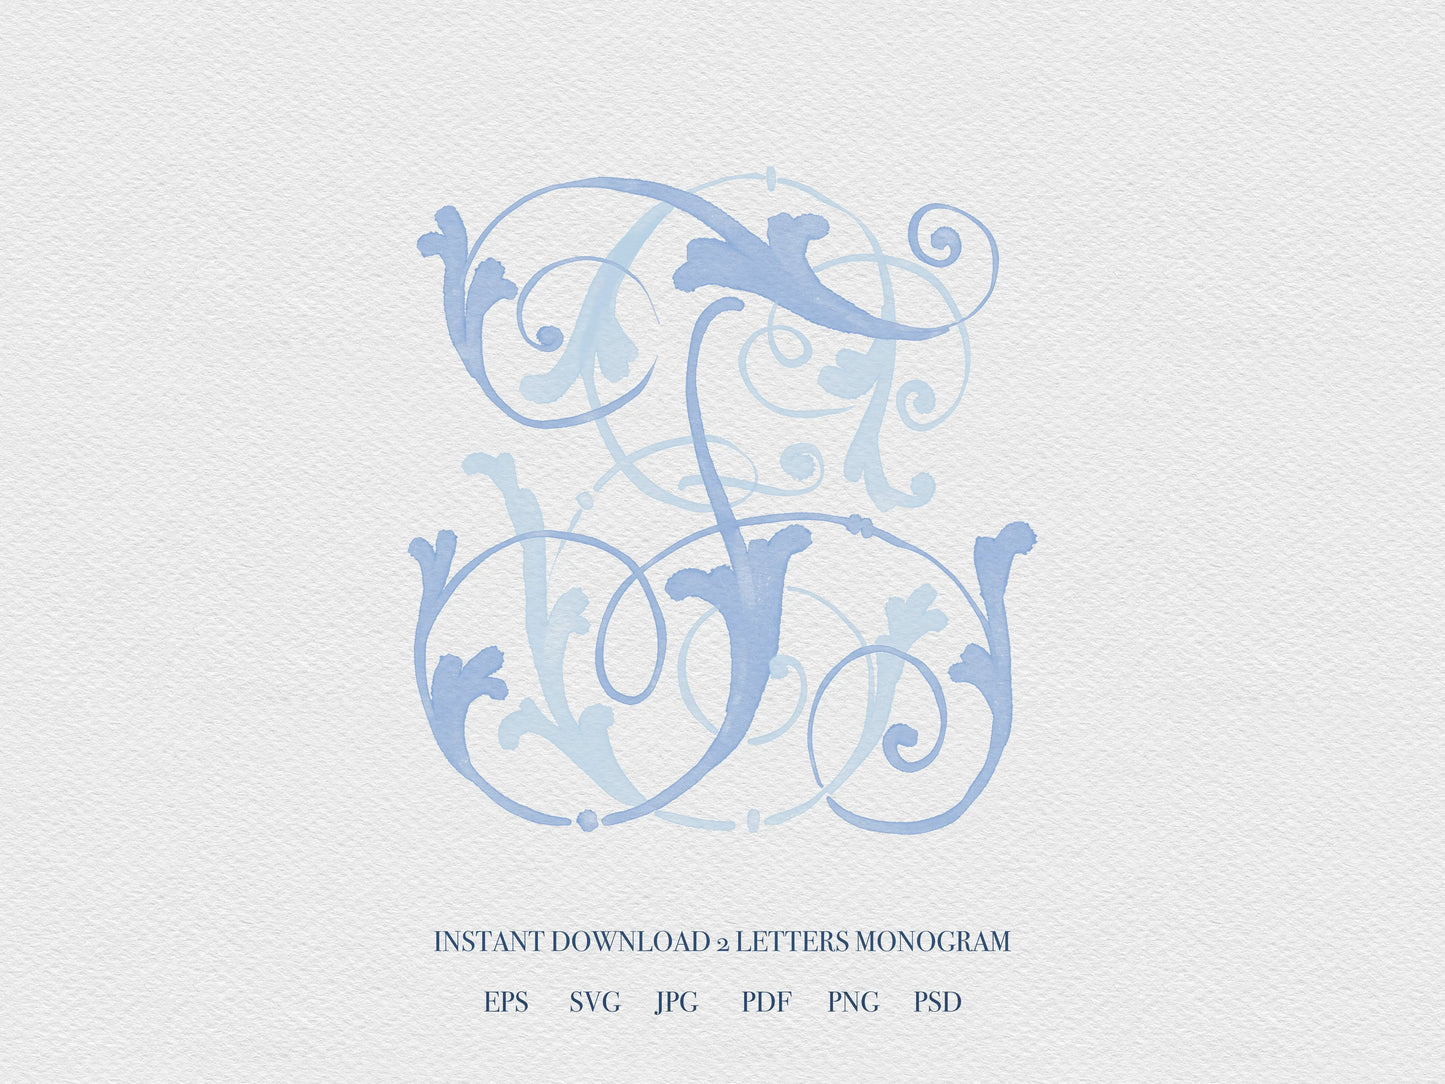 WD 2 Letter Monogram Digital Download - Wedding Monogram SVG